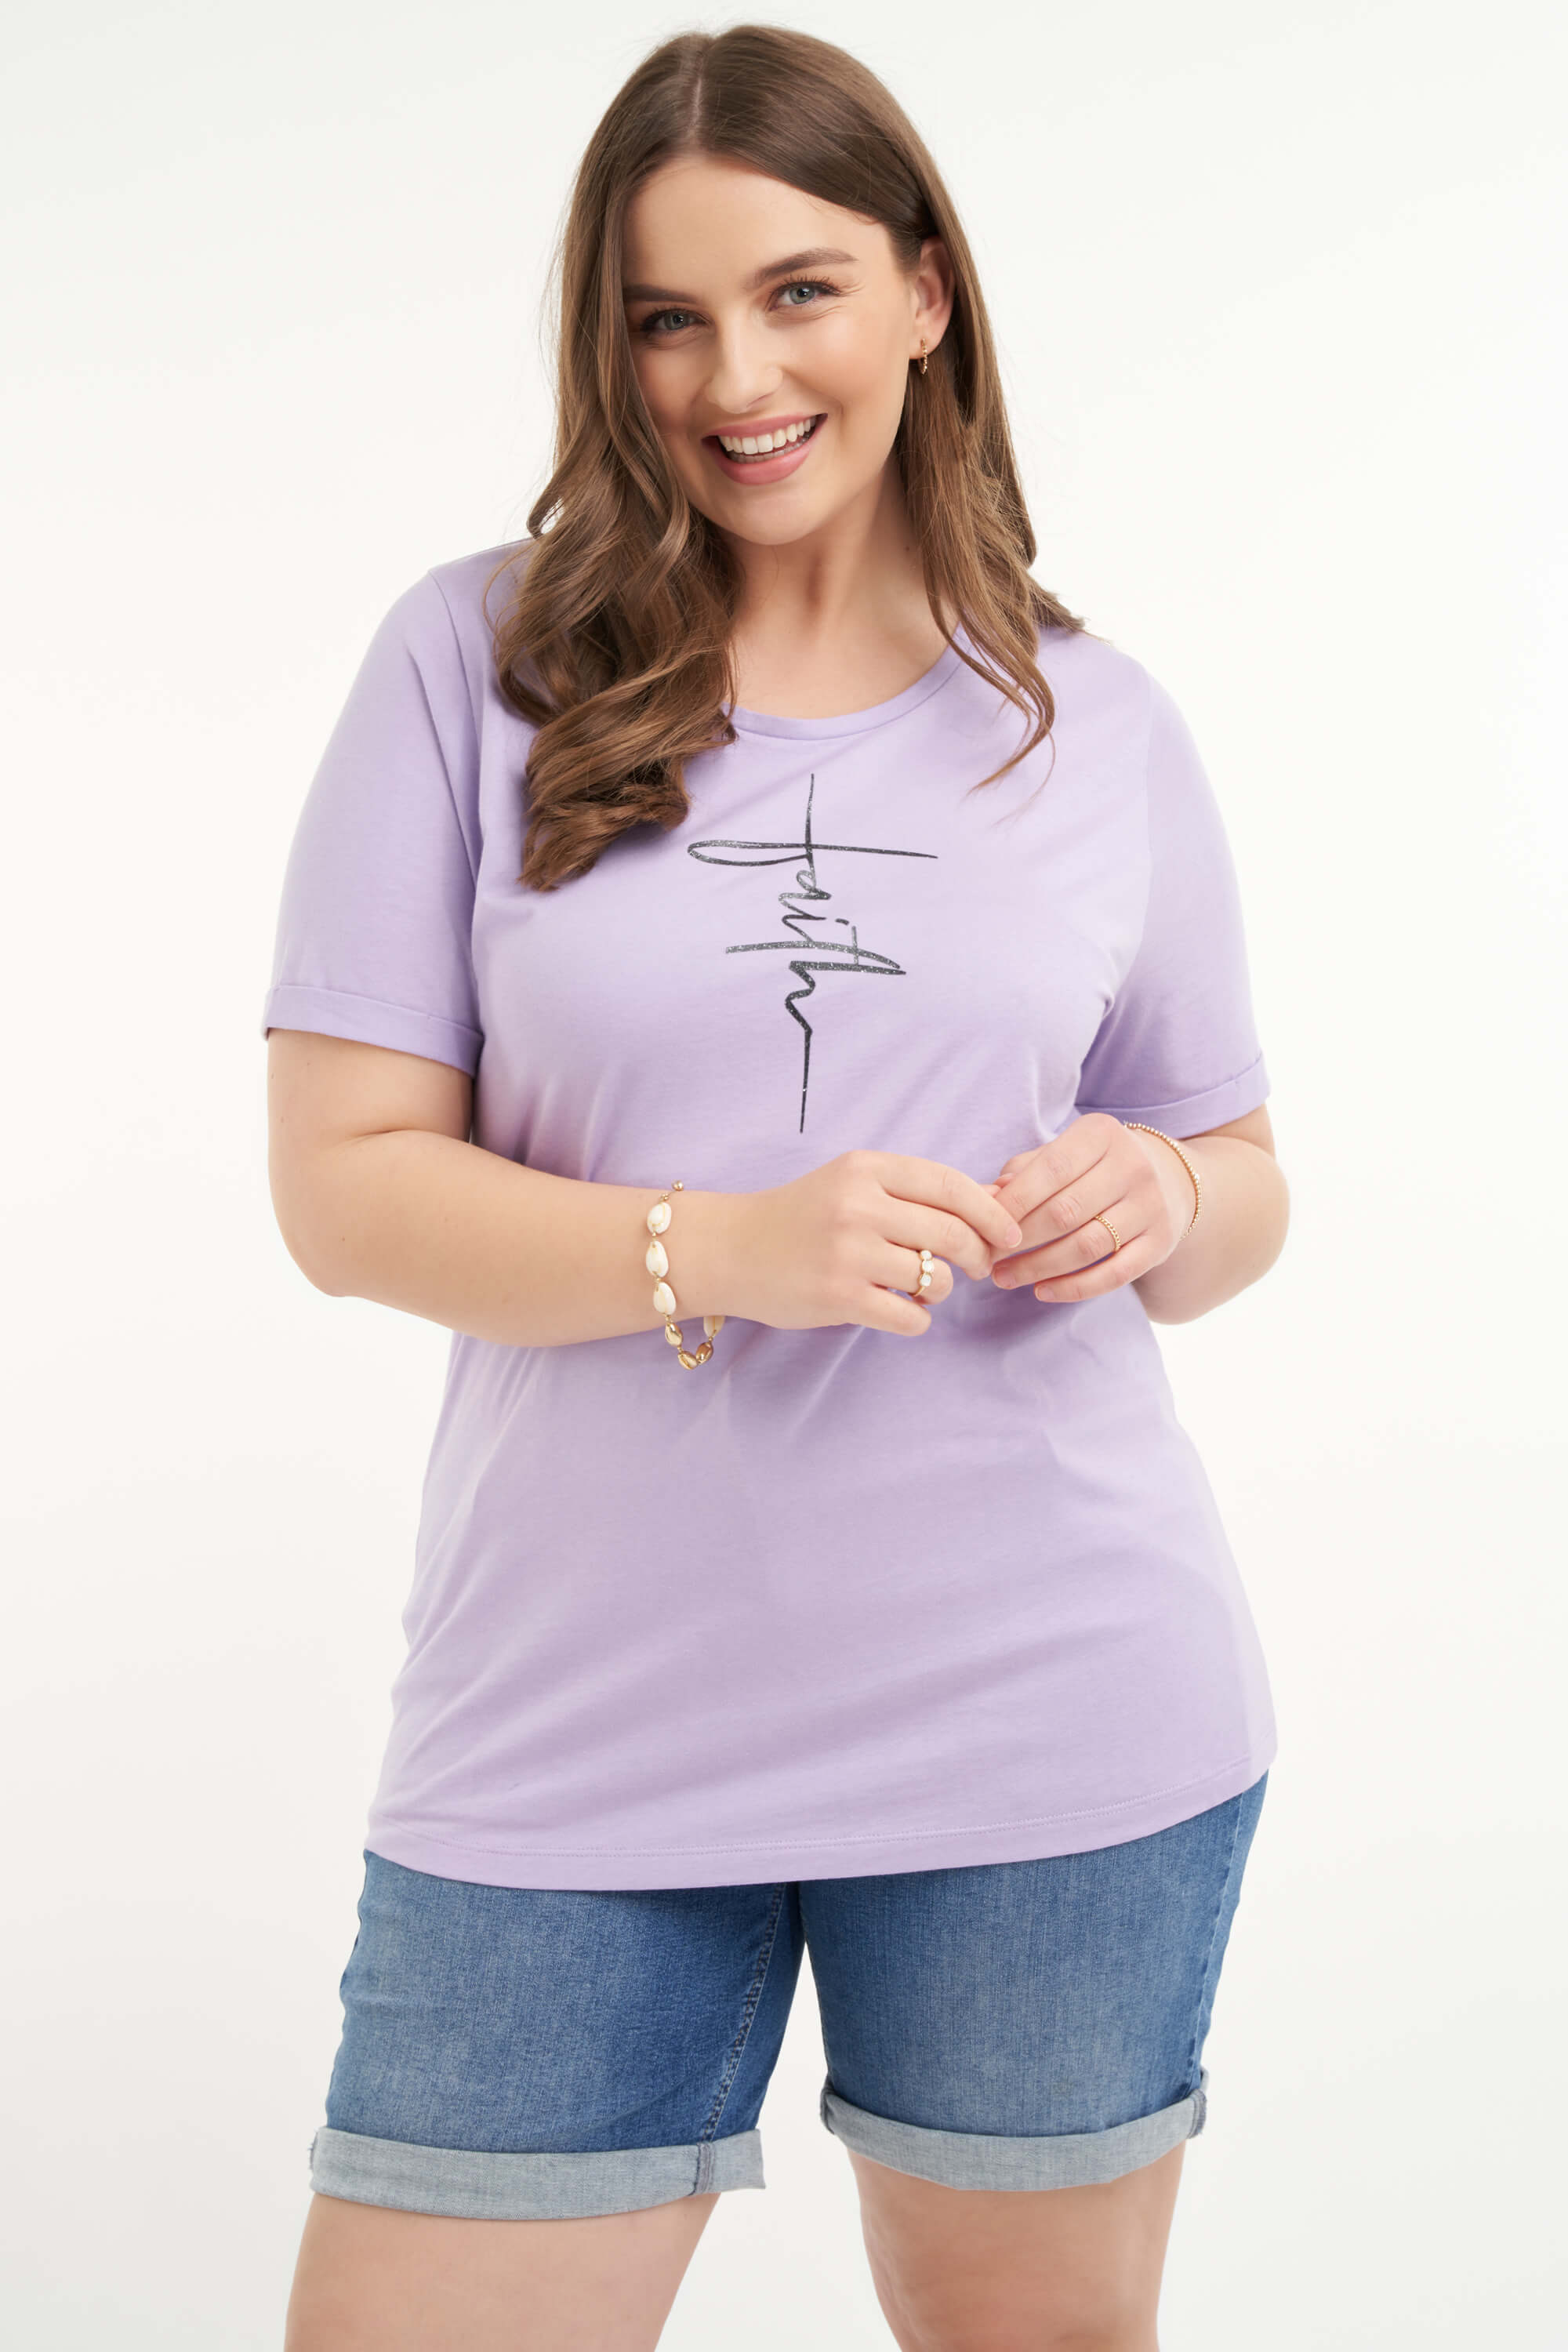 Damen T-Shirt mit Print | Official MS Mode® online store